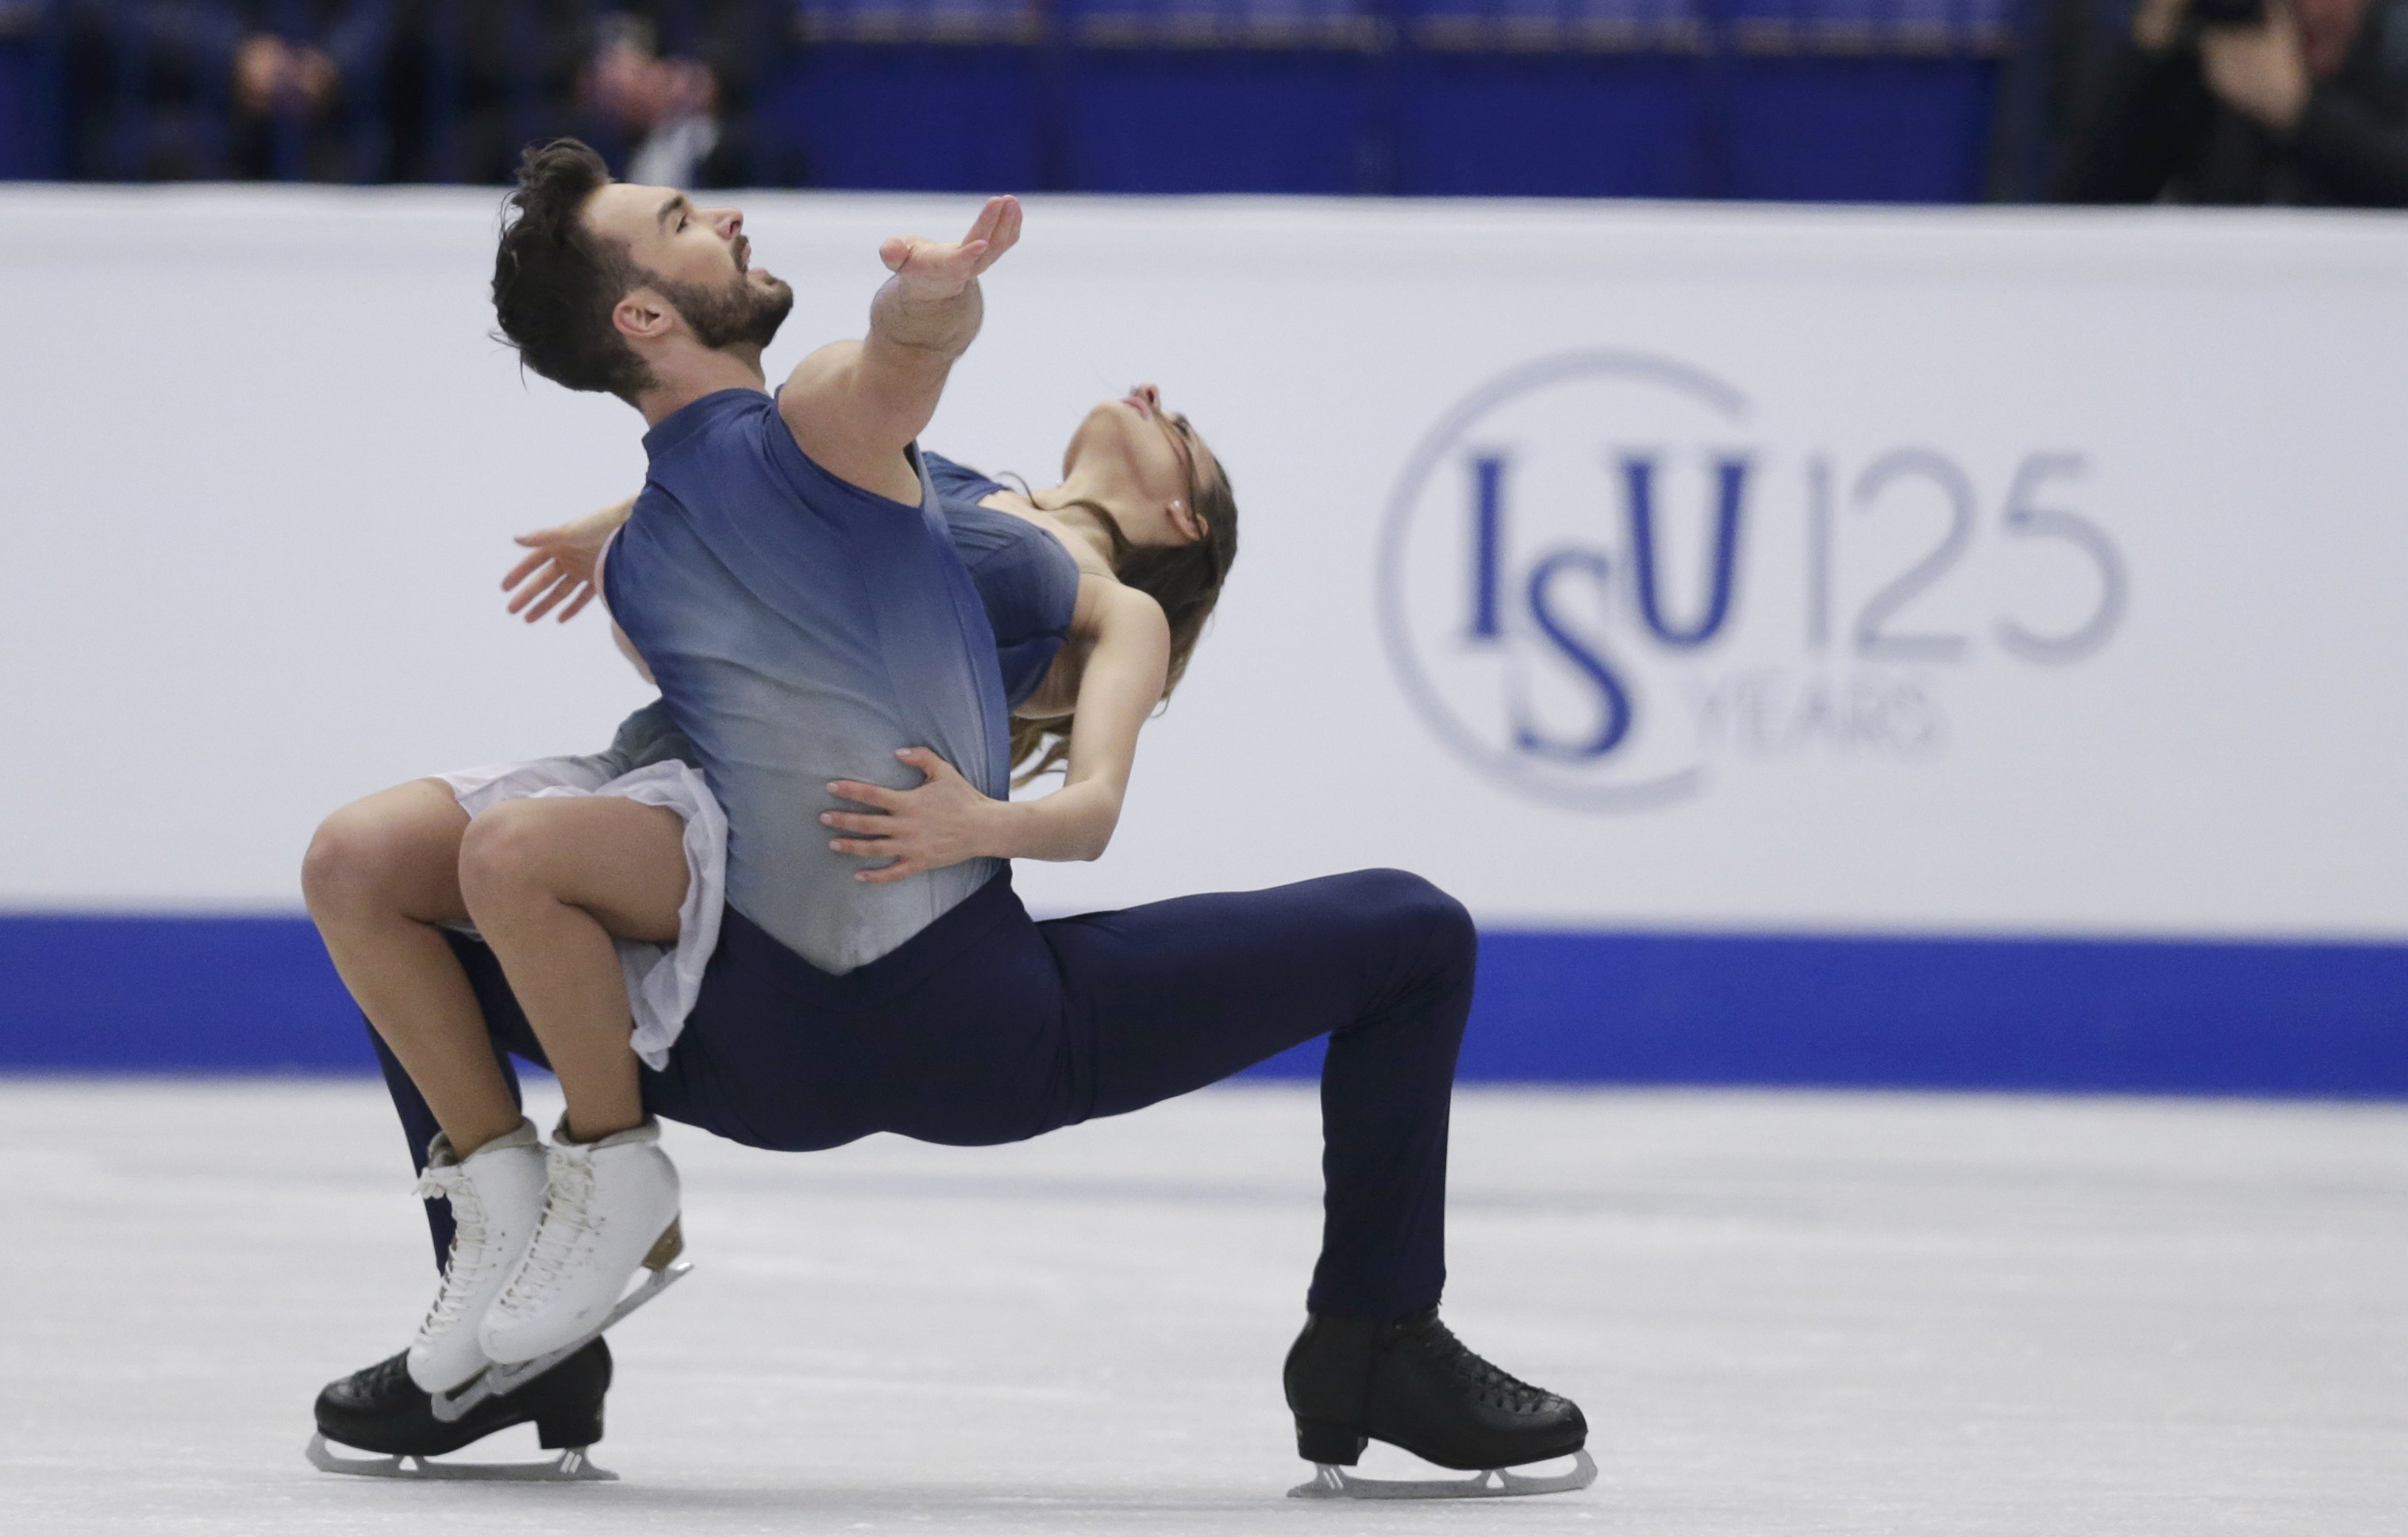 بطولة كأس الأمم الأوروبية 2017 للرقص الحر على الجليد (33